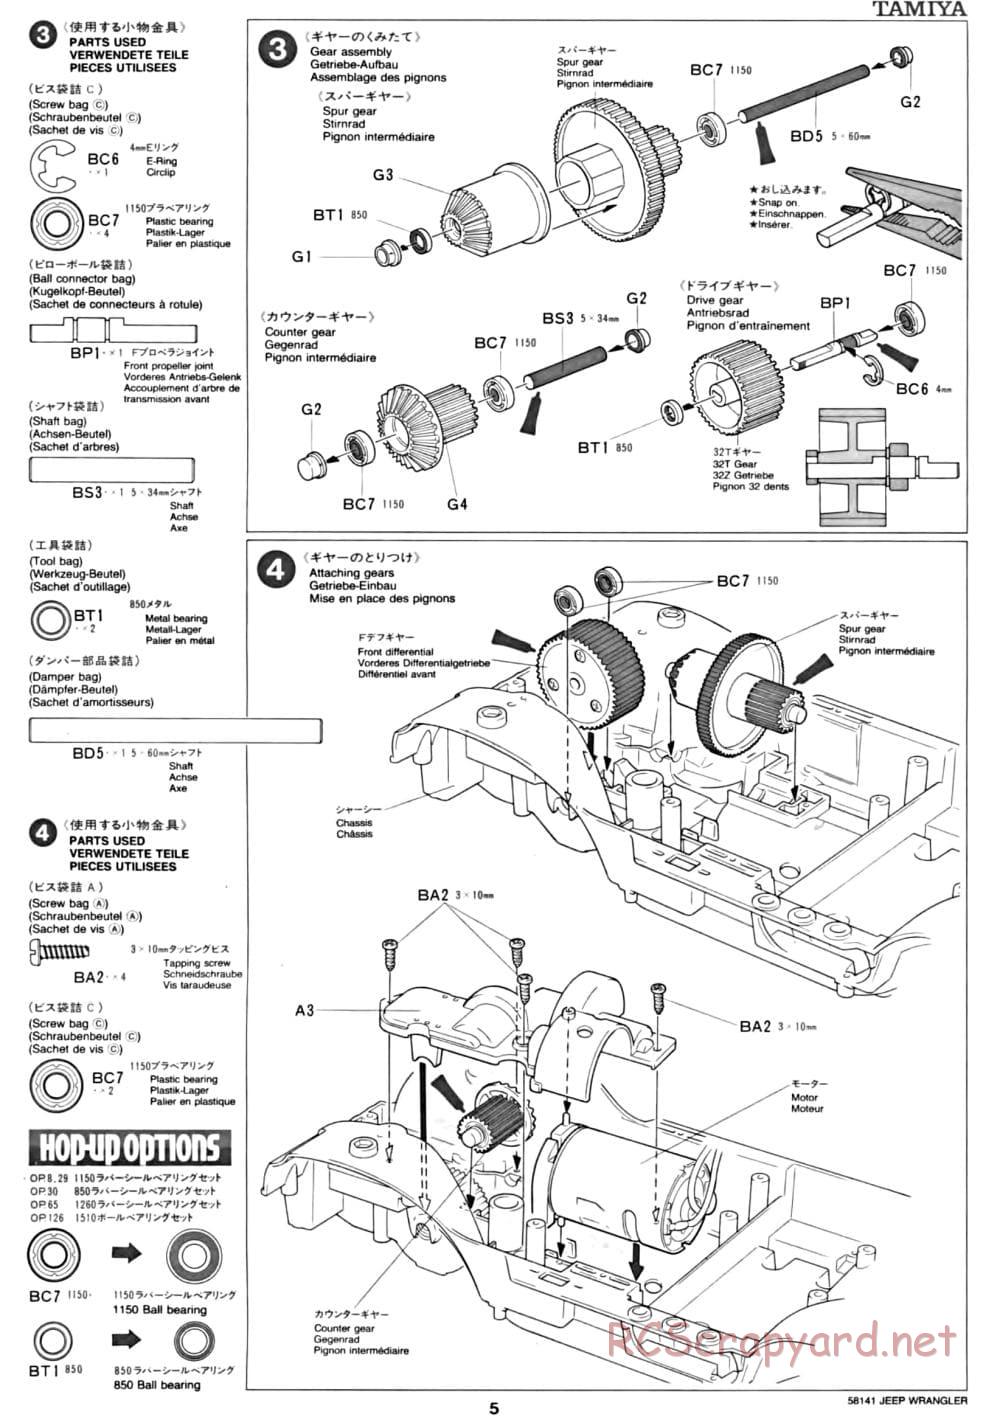 Tamiya - Jeep Wrangler - CC-01 Chassis - Manual - Page 5